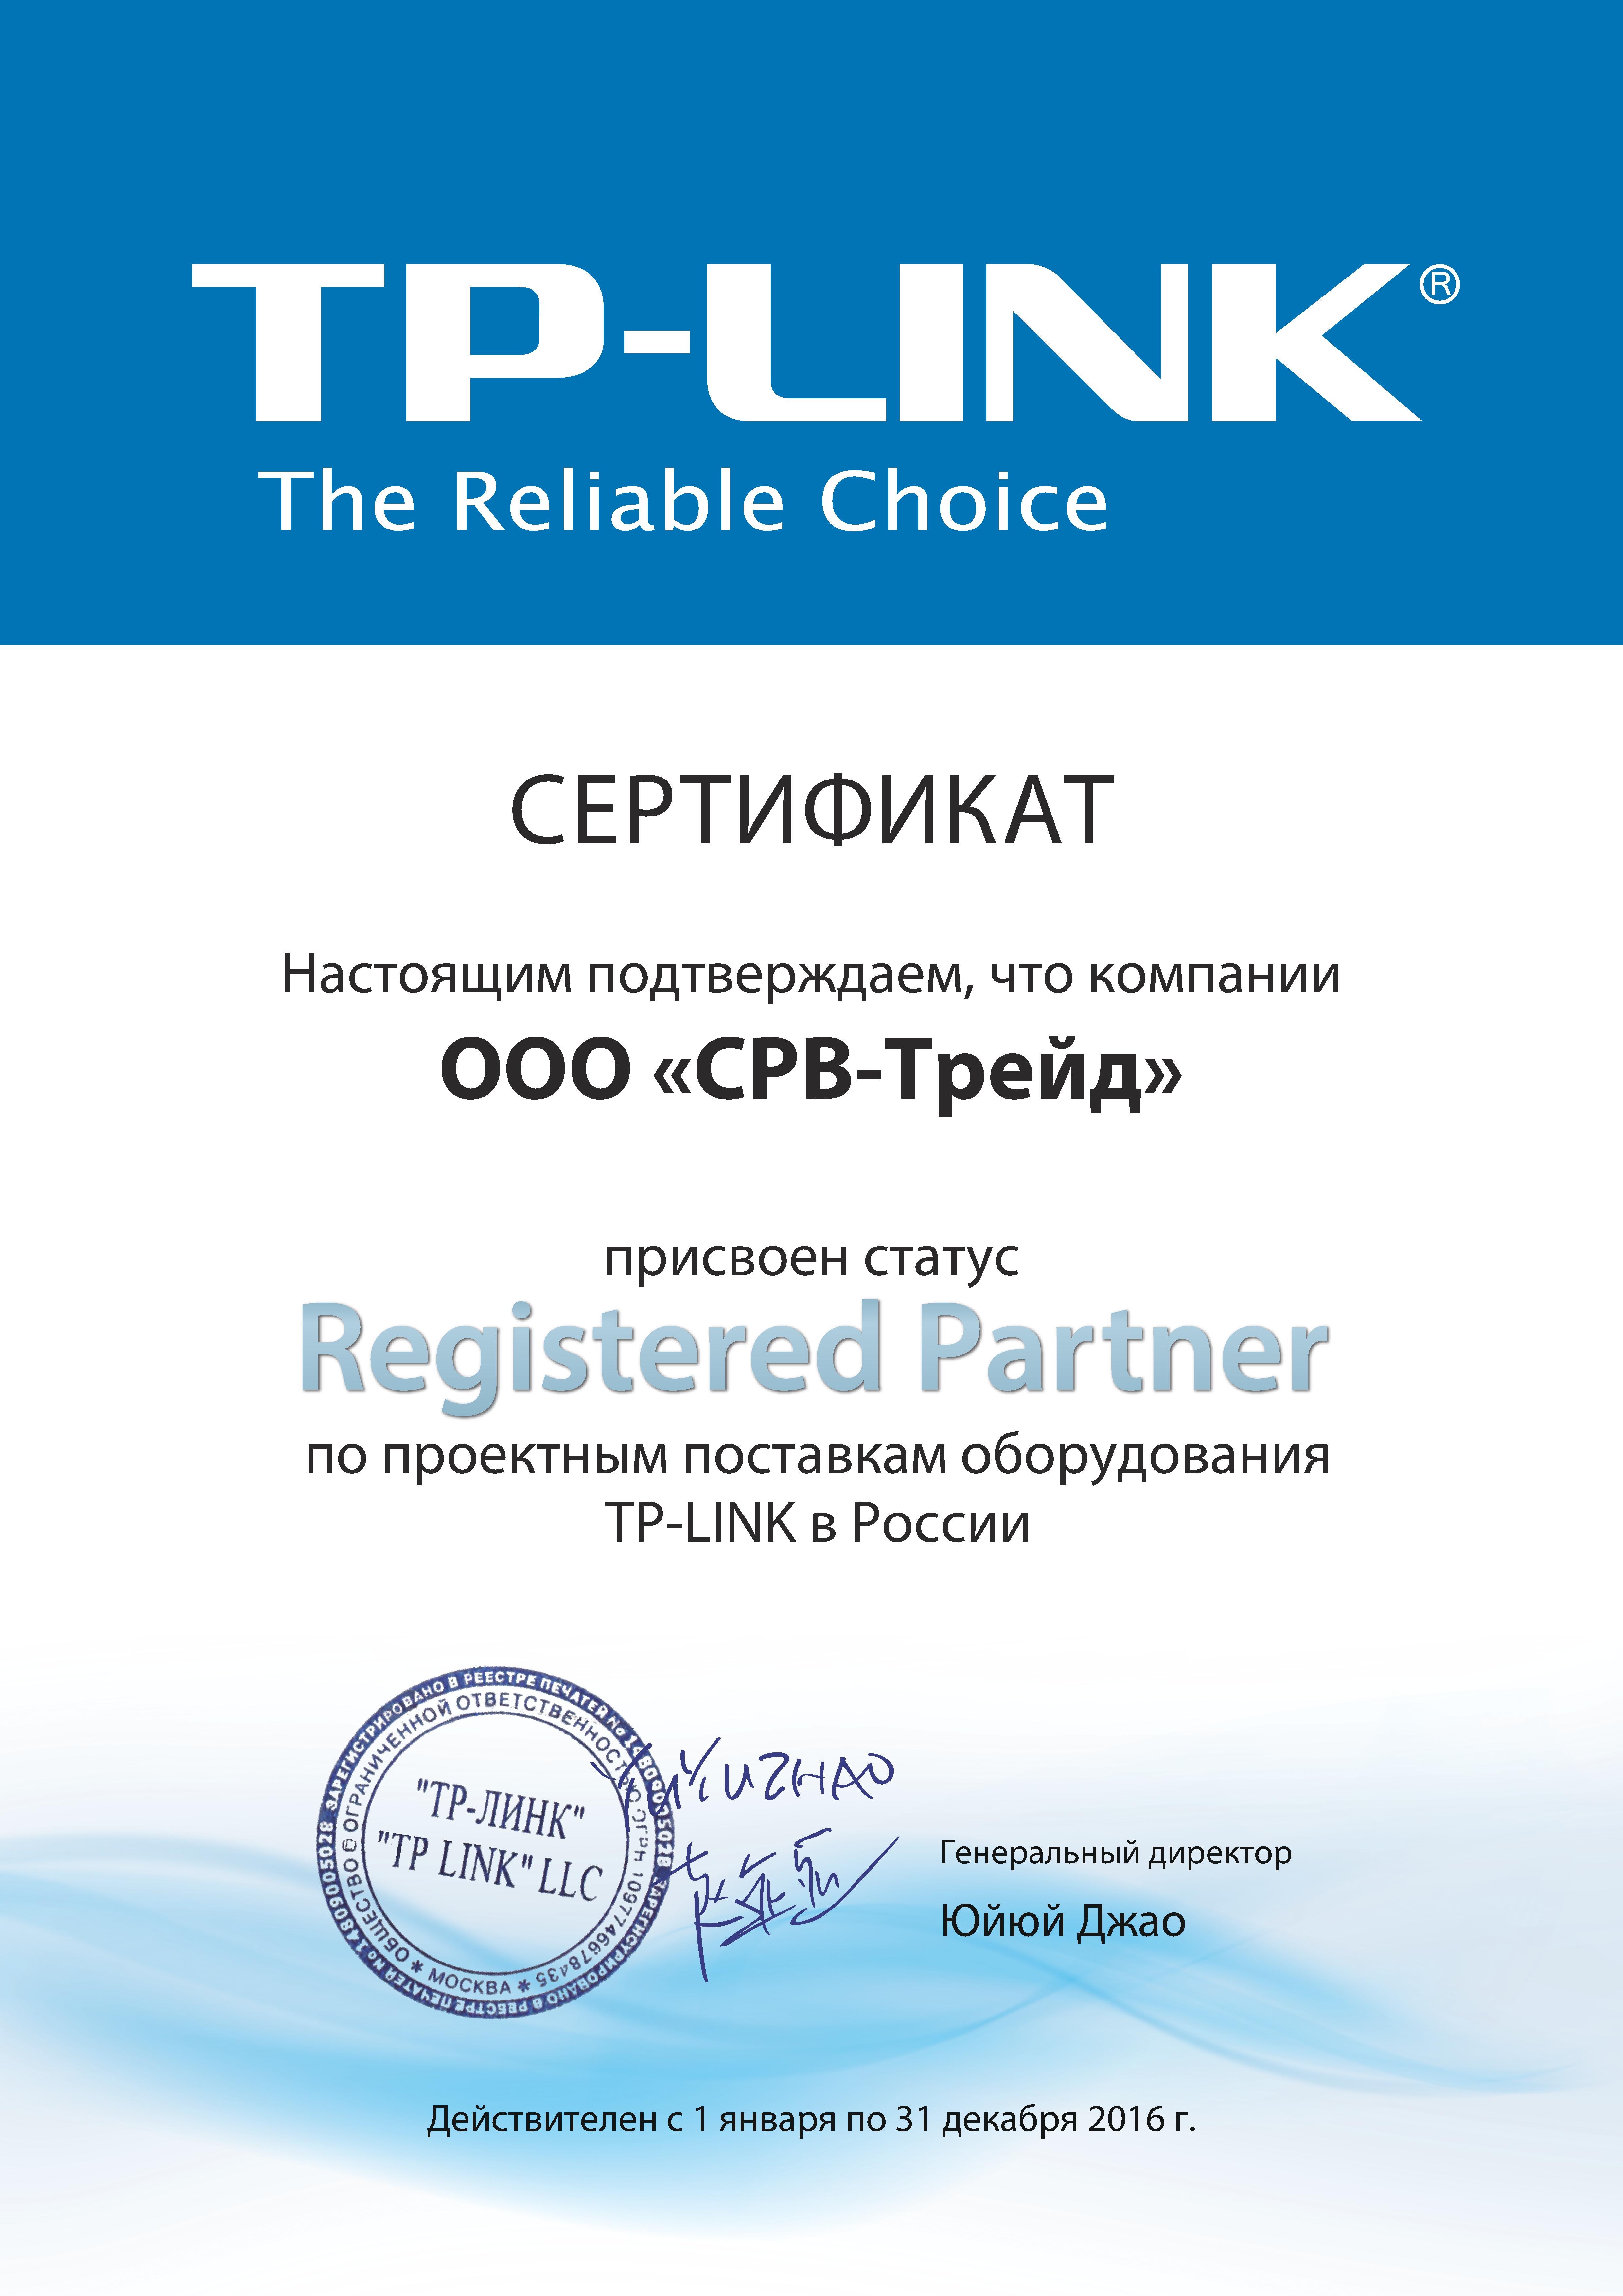 Сертификат SRV-TRADE как партнера TP-LINK